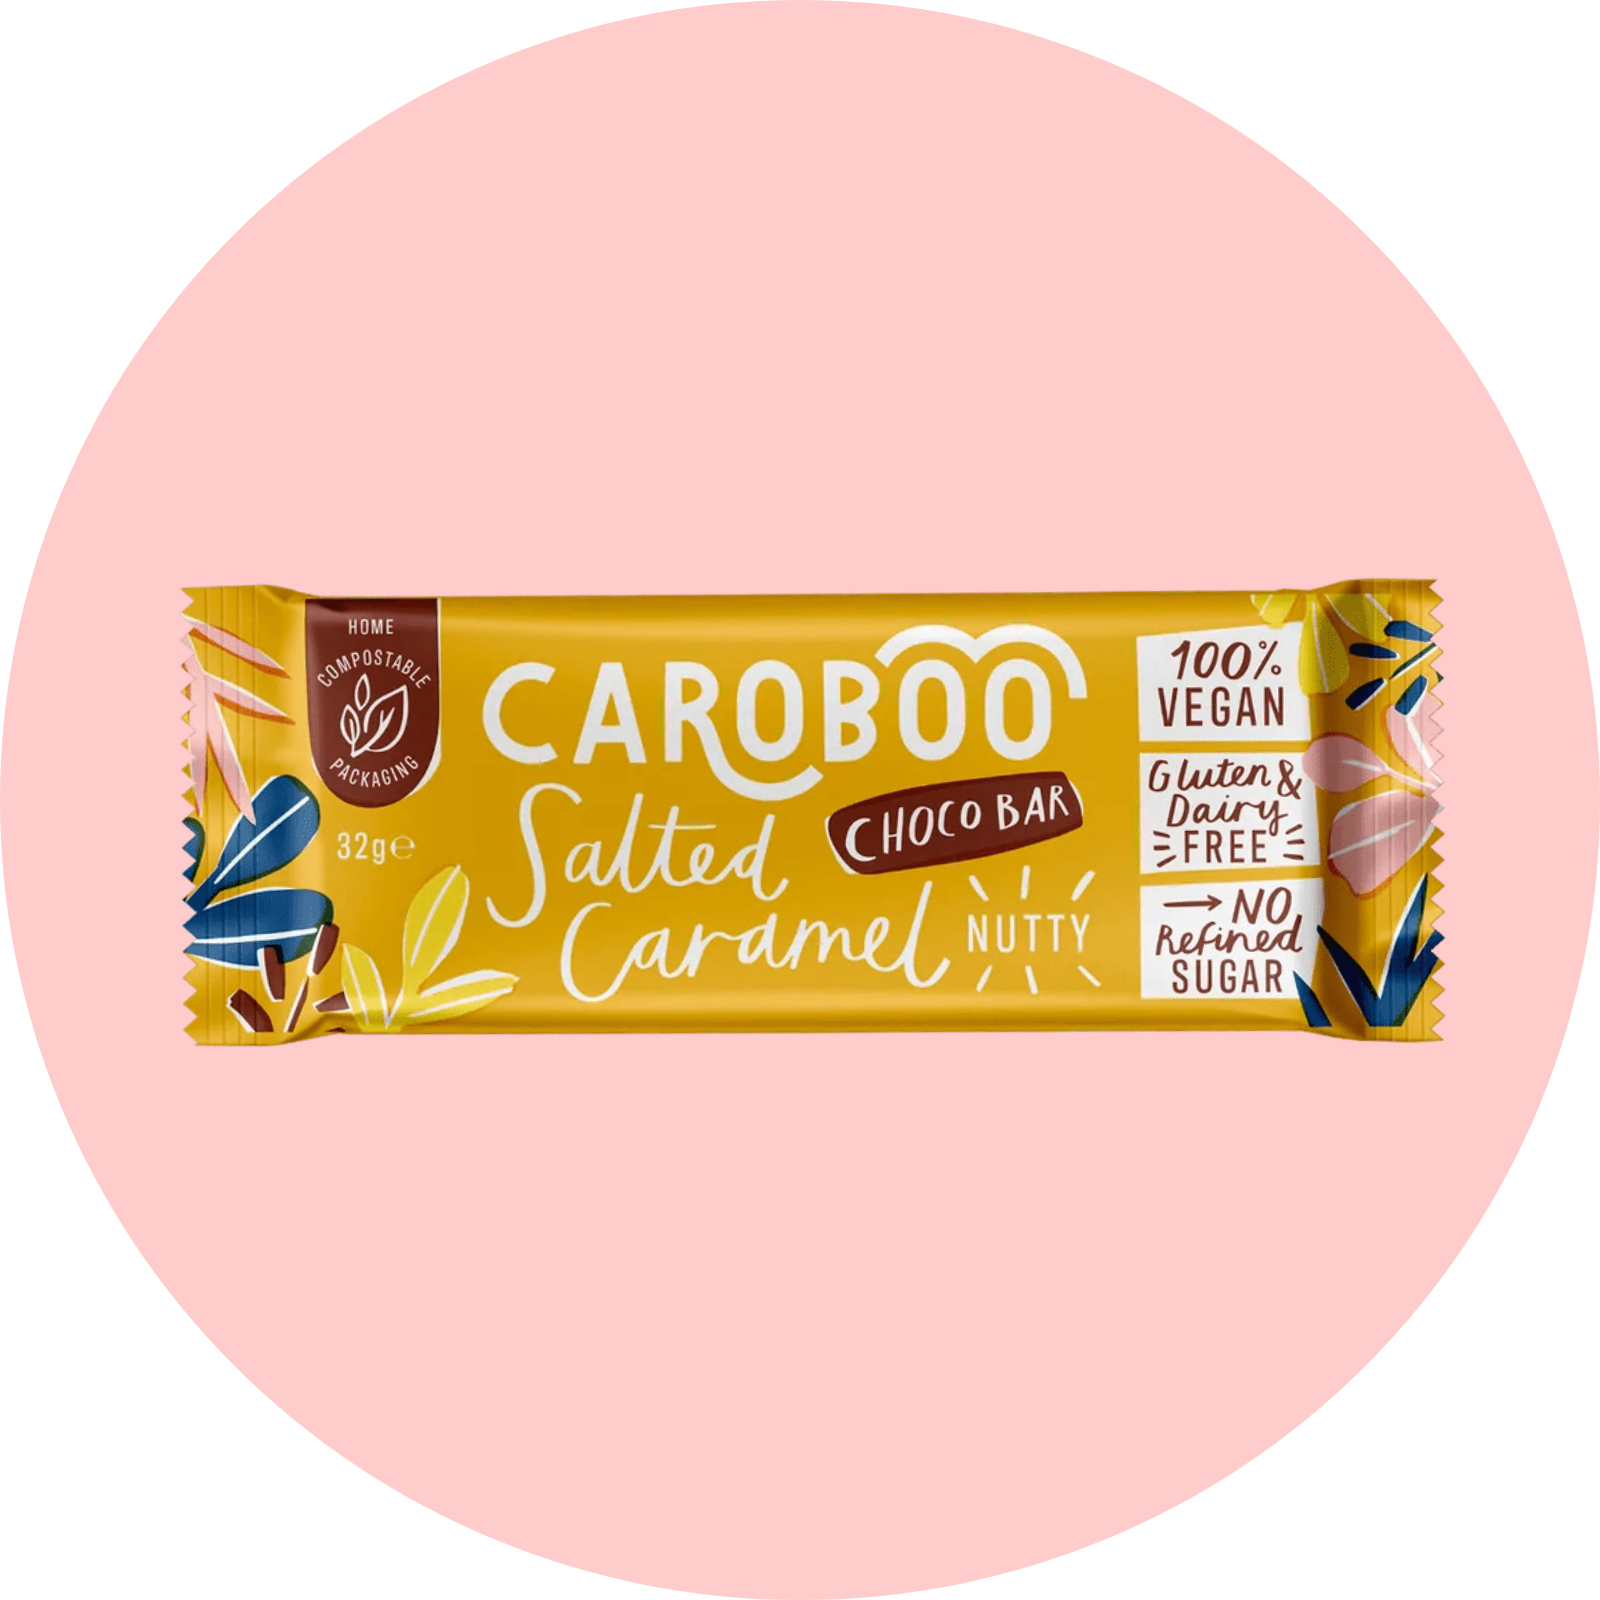 Caraboo Salted Caramel Carob Chocolate Bar